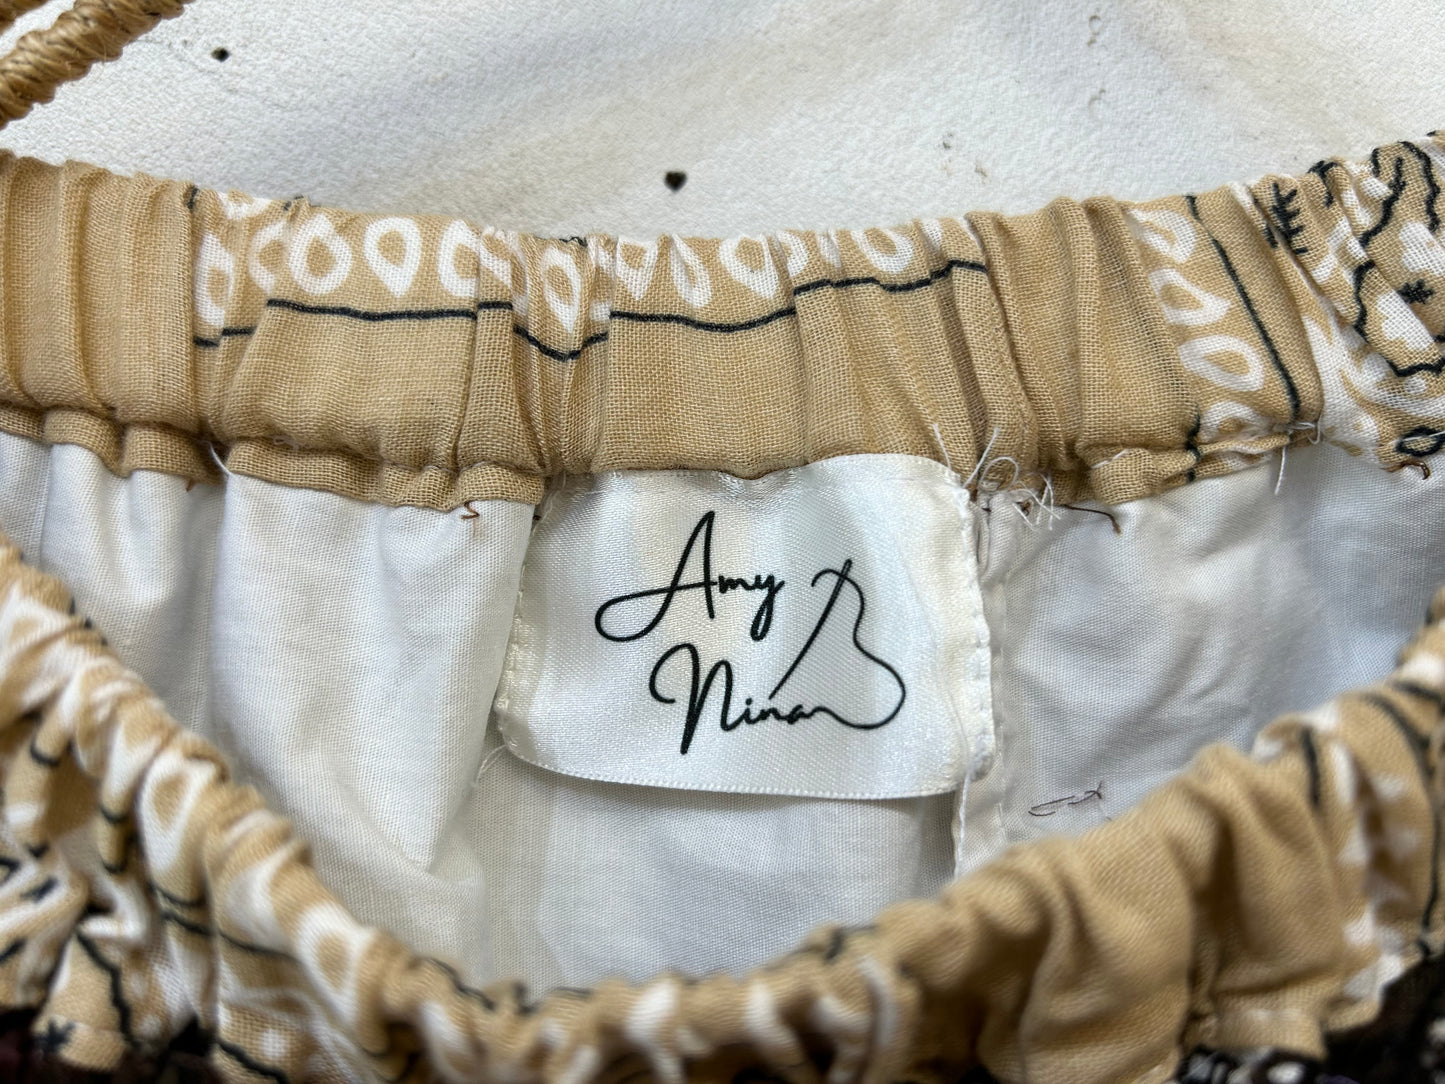 Vintage Bandana Fringe Skirt 〜Amy Nina〜 [H24856]